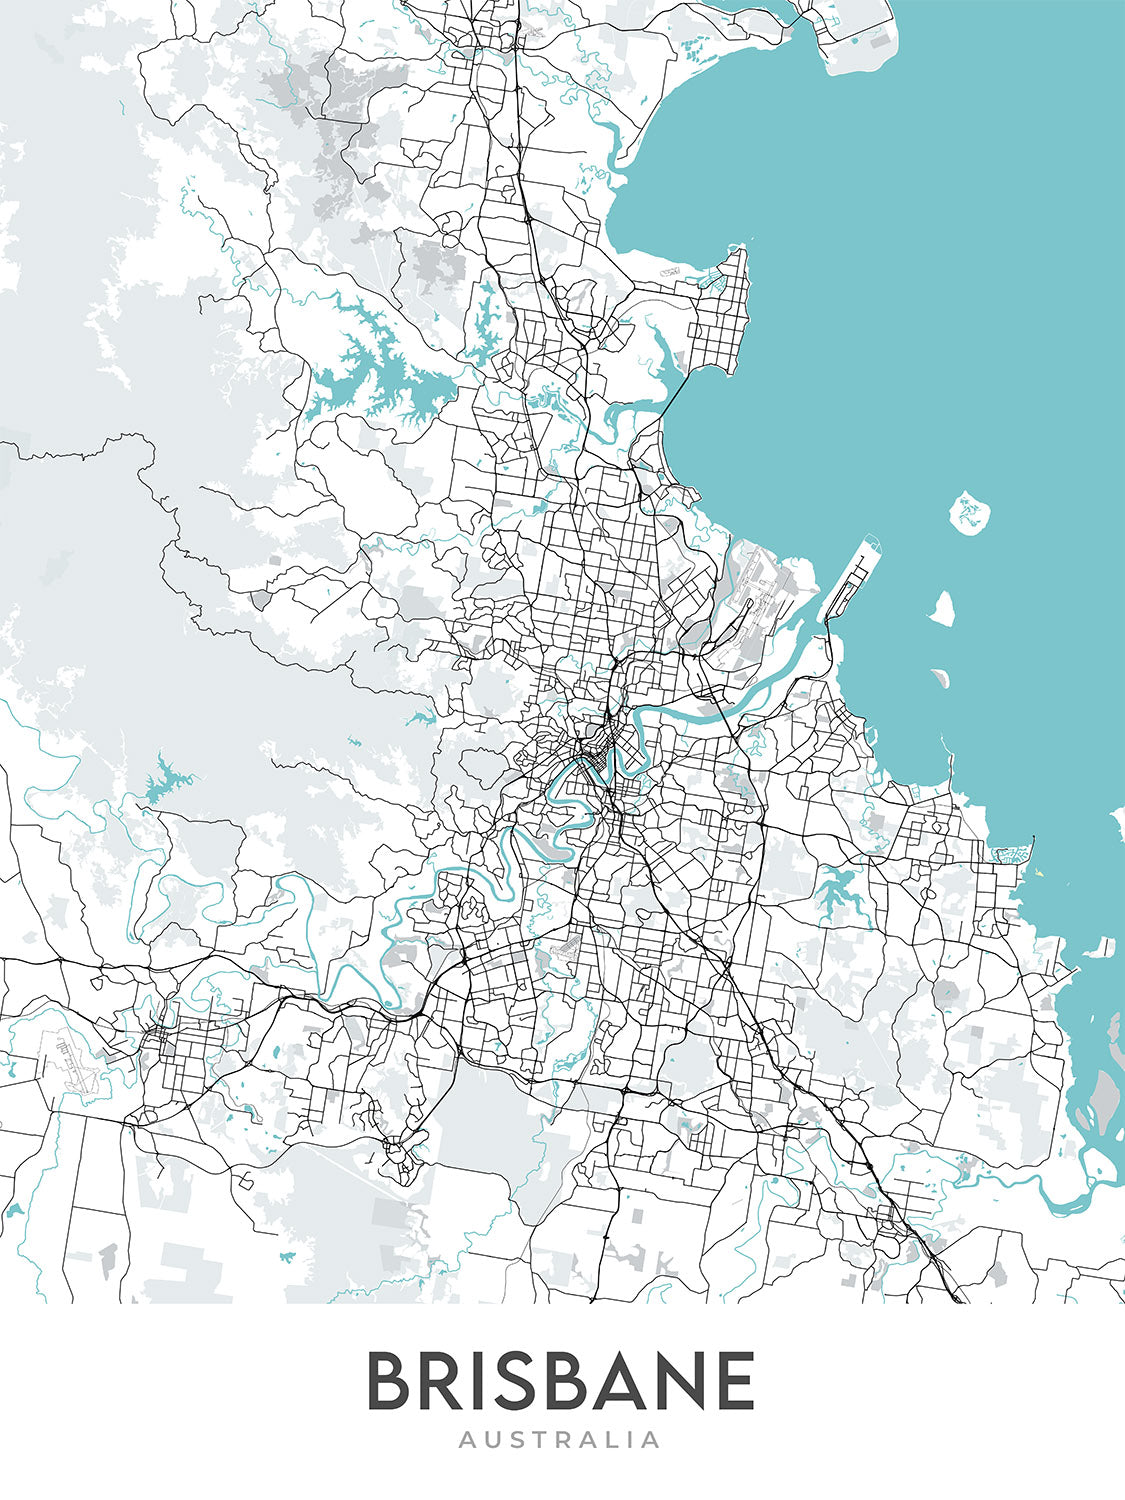 Moderner Stadtplan von Brisbane, Australien: Rathaus, Story Bridge, South Bank, UQ, Flughafen